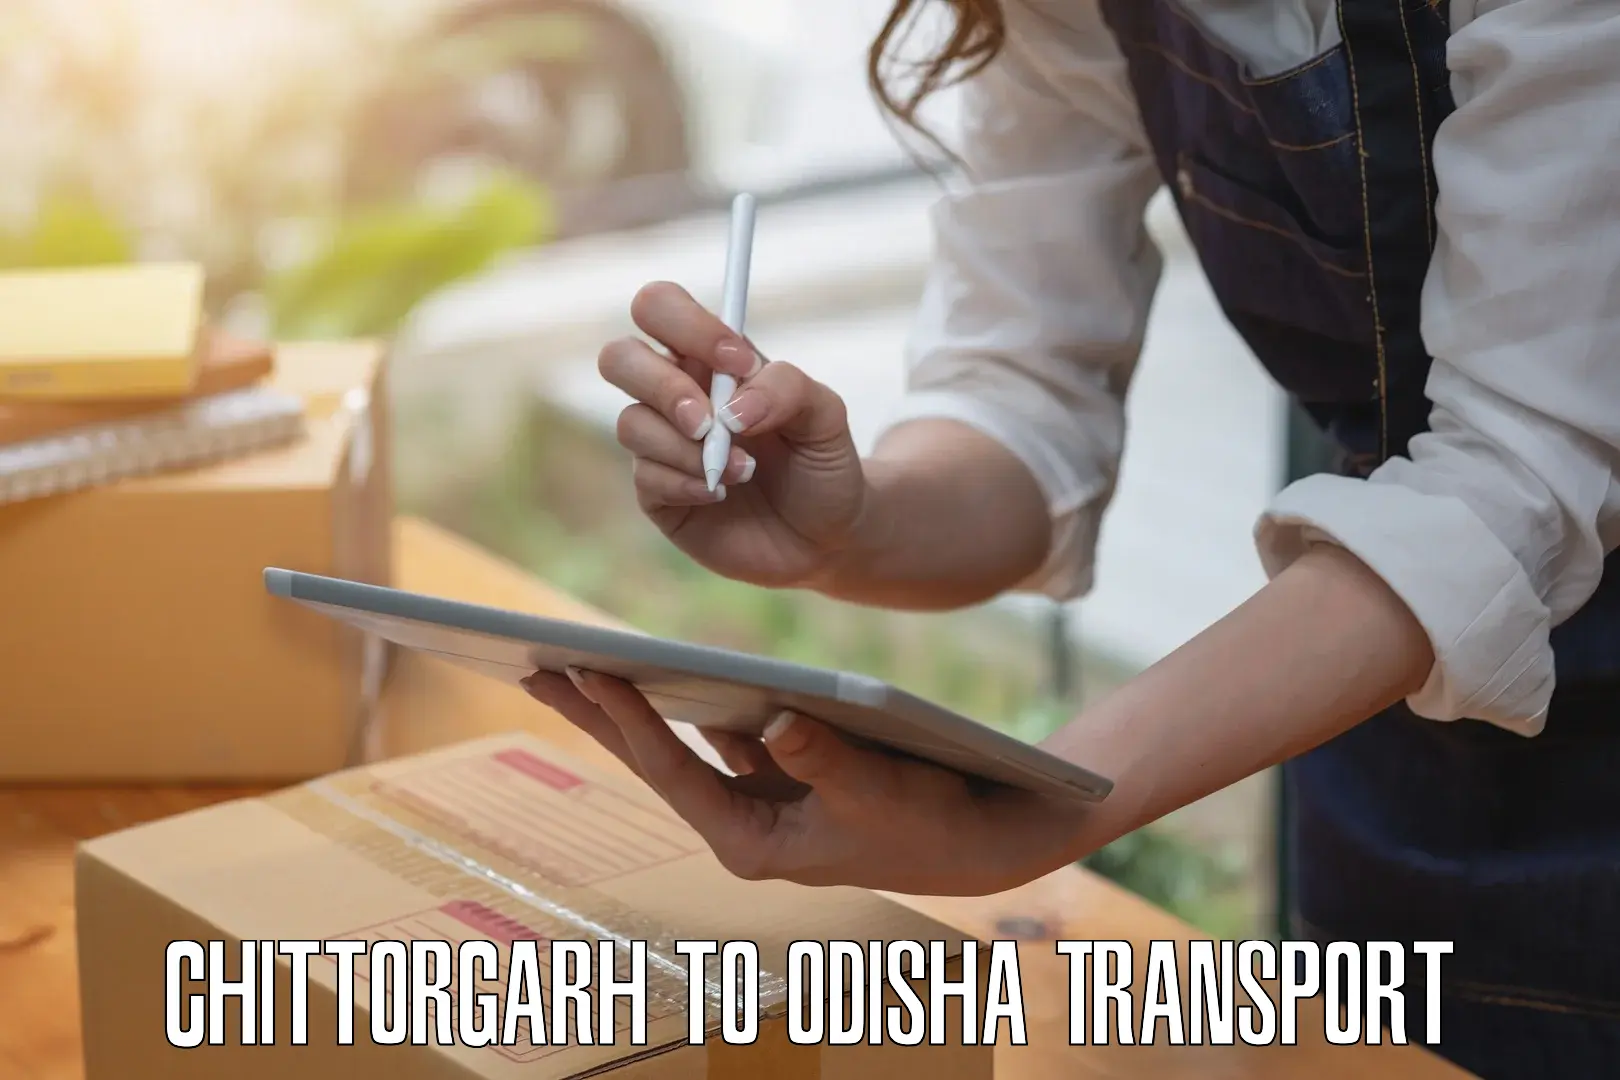 Road transport online services Chittorgarh to Nabarangpur